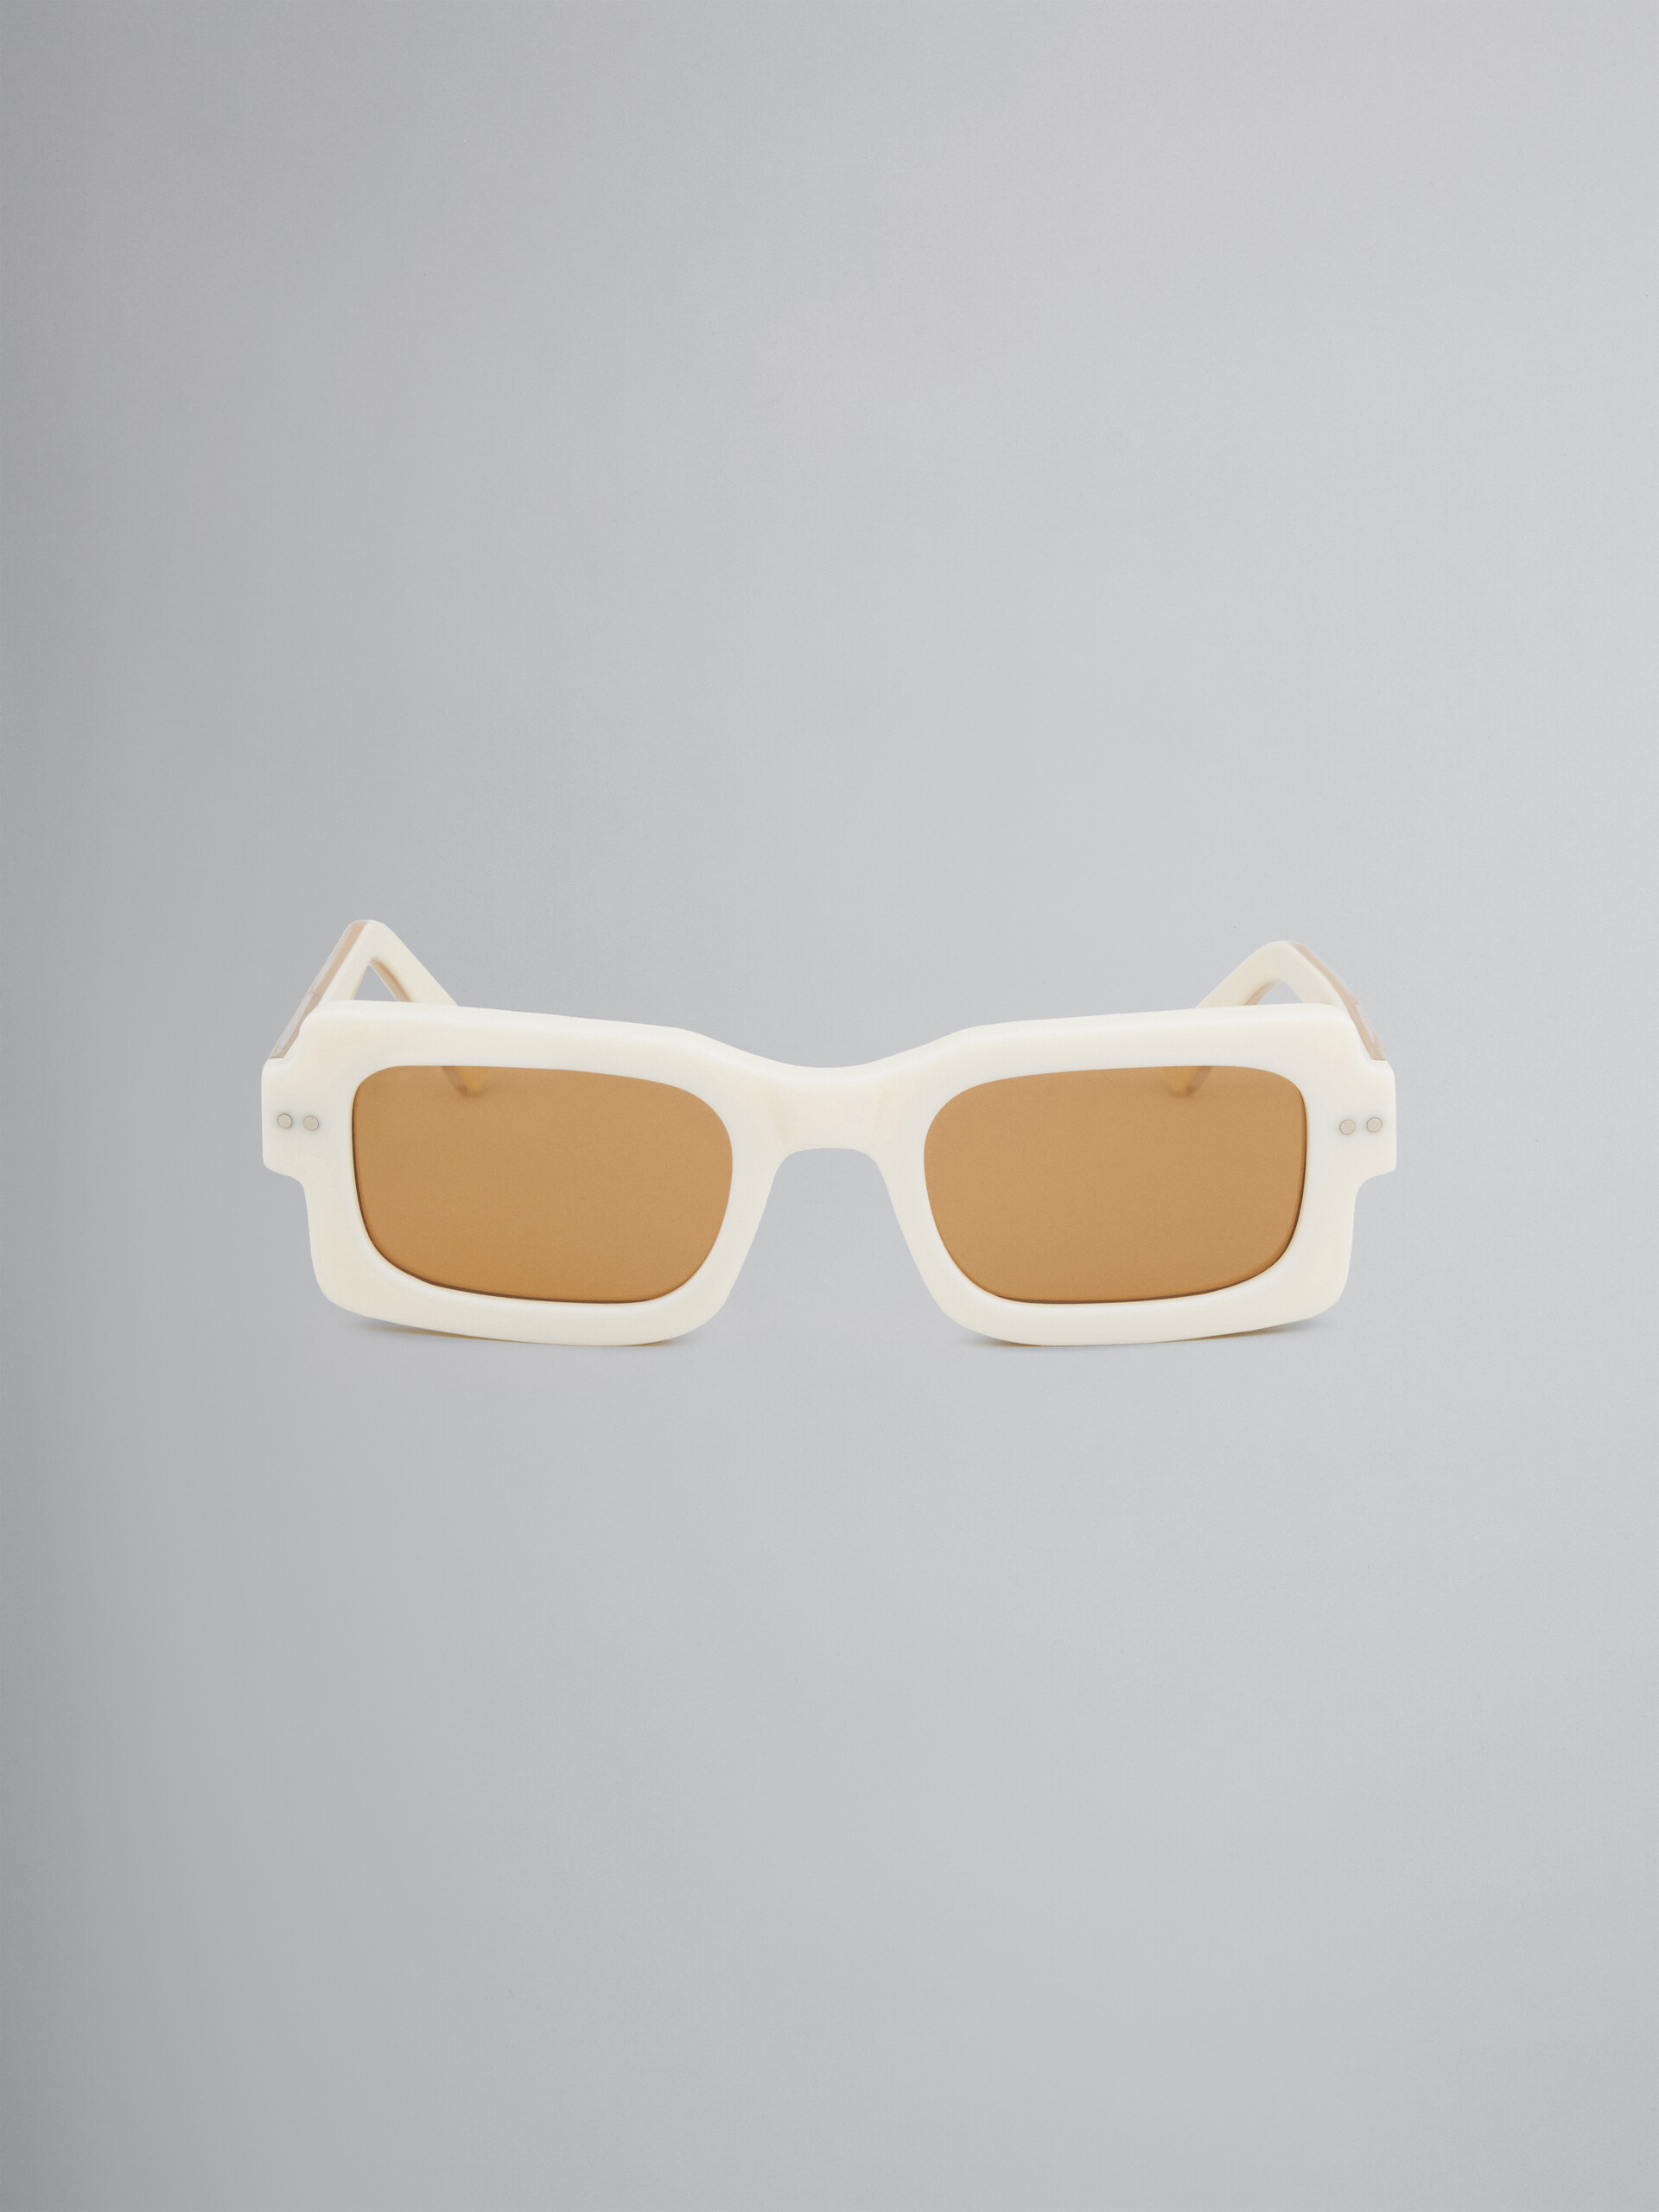 Occhiali da sole LAKE VOSTOK in acetato bianco - Occhiali da sole - Image 1